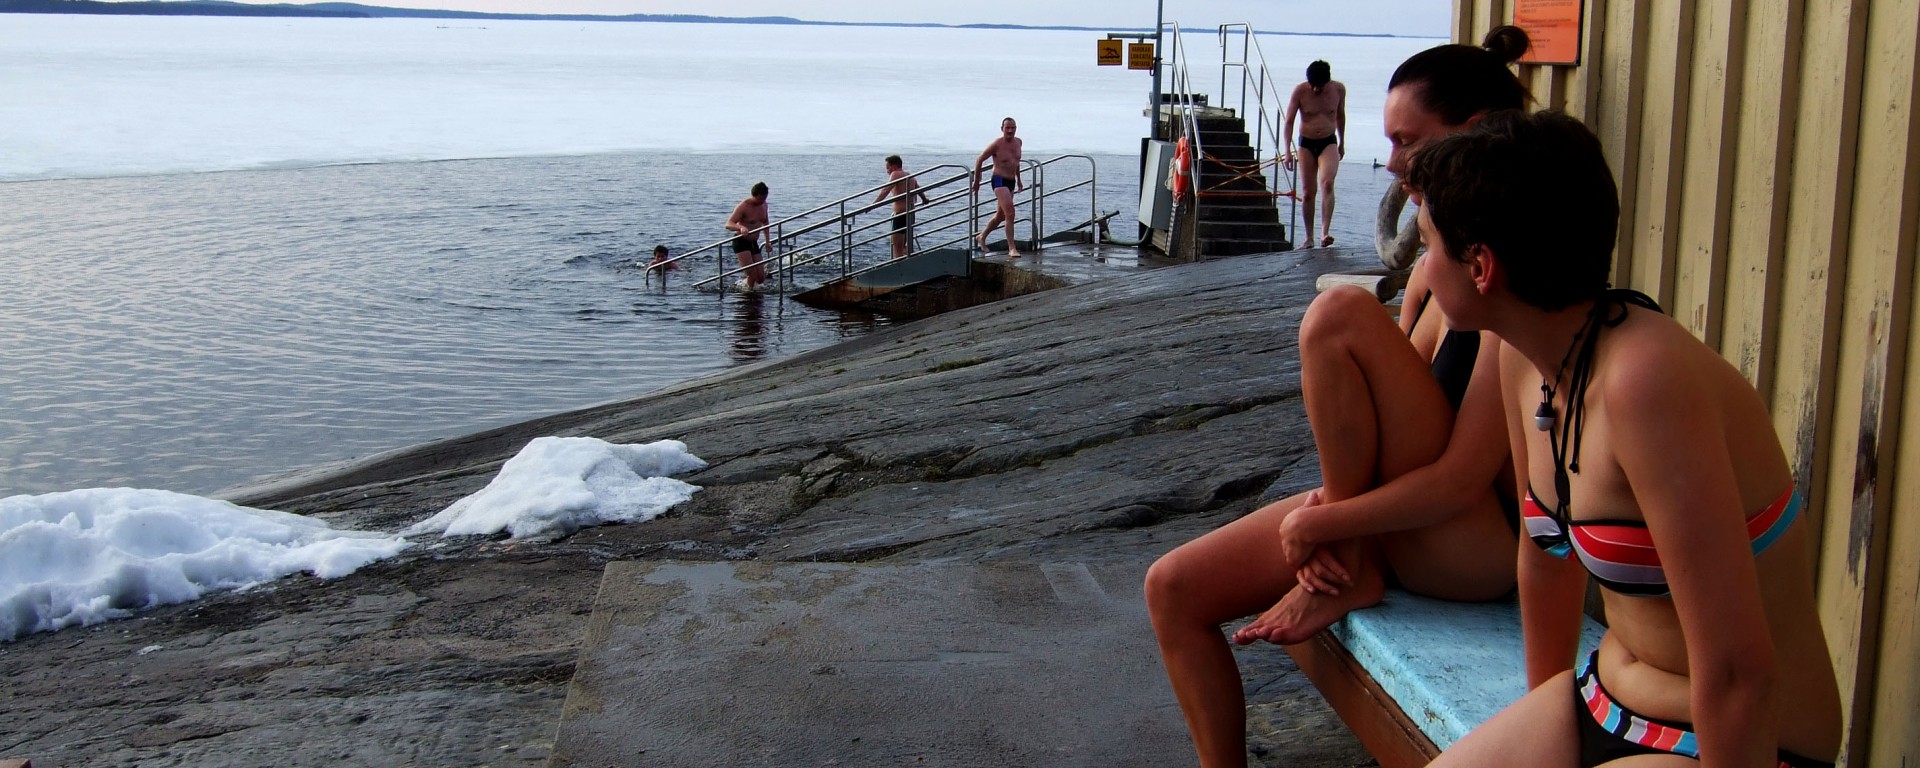 Tampere, Finlandia – Sudando en una sauna finlandesa – Contando kilómetros